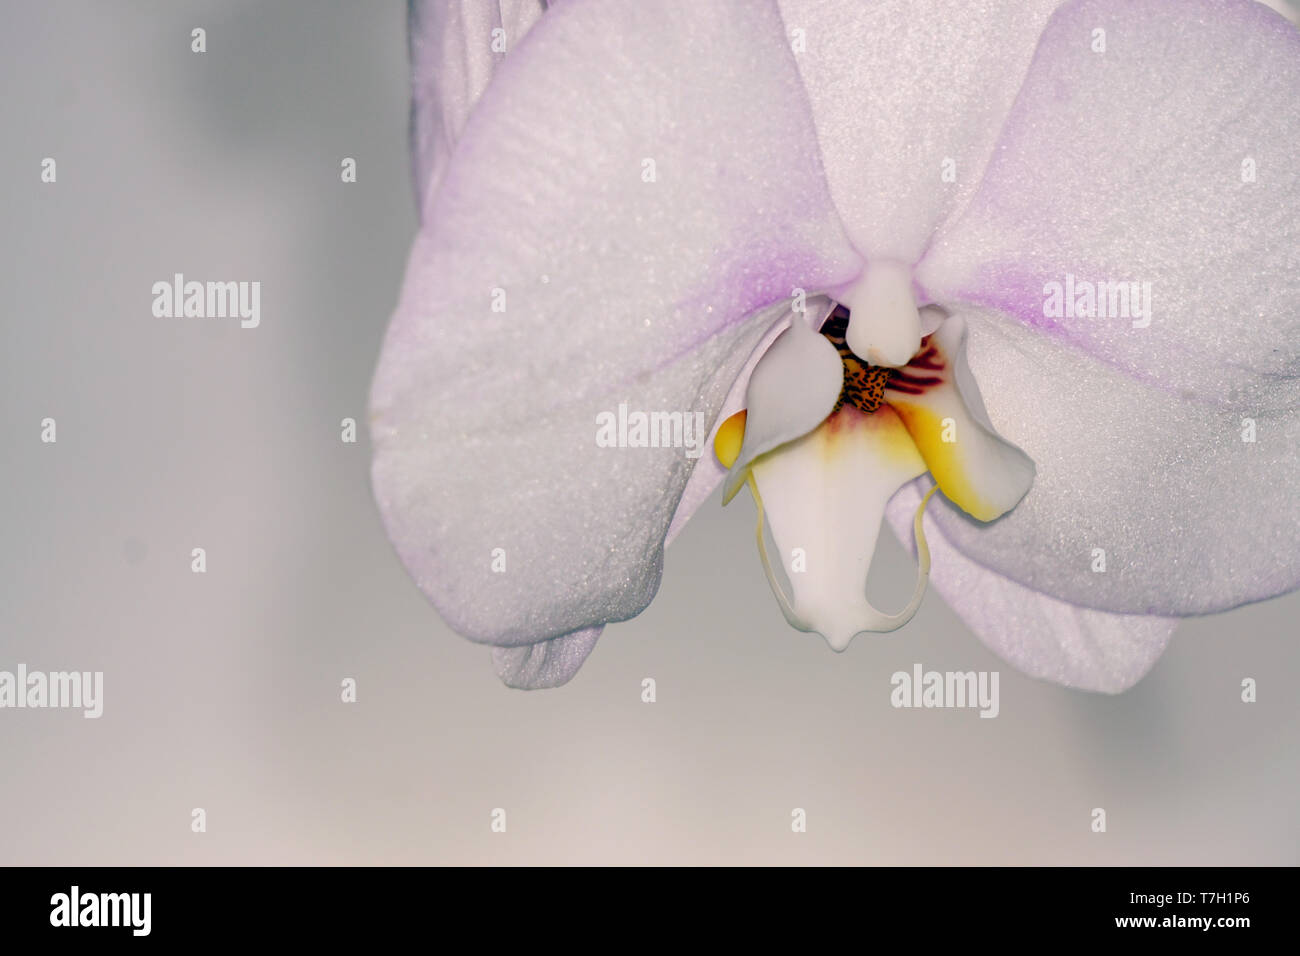 Fleurs orchidées texture background Banque D'Images